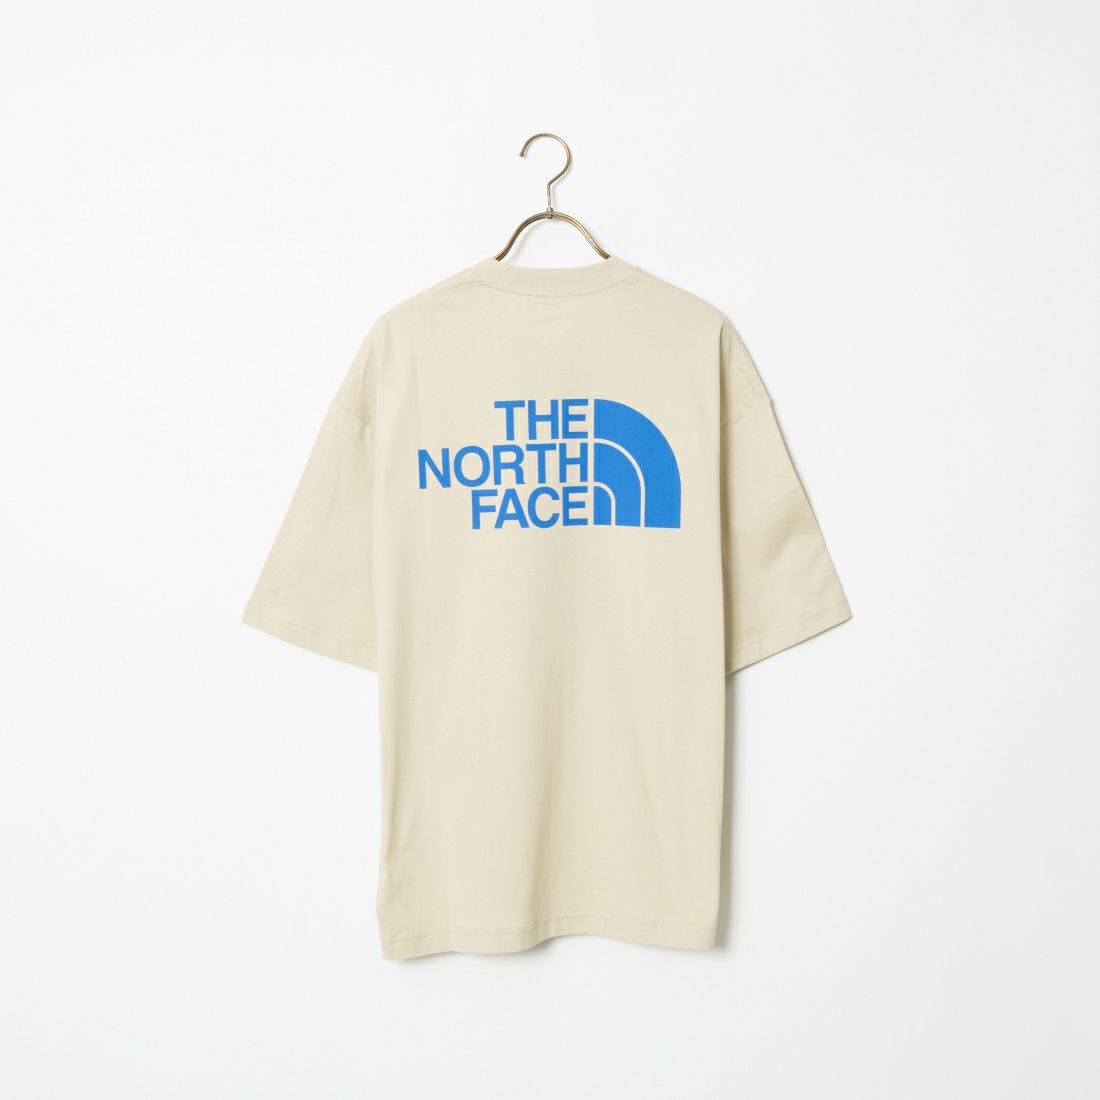 THE NORTH FACE [ザ ノースフェイス] ショートスリーブ シンプルカラースキームTシャツ [NT32434] GL